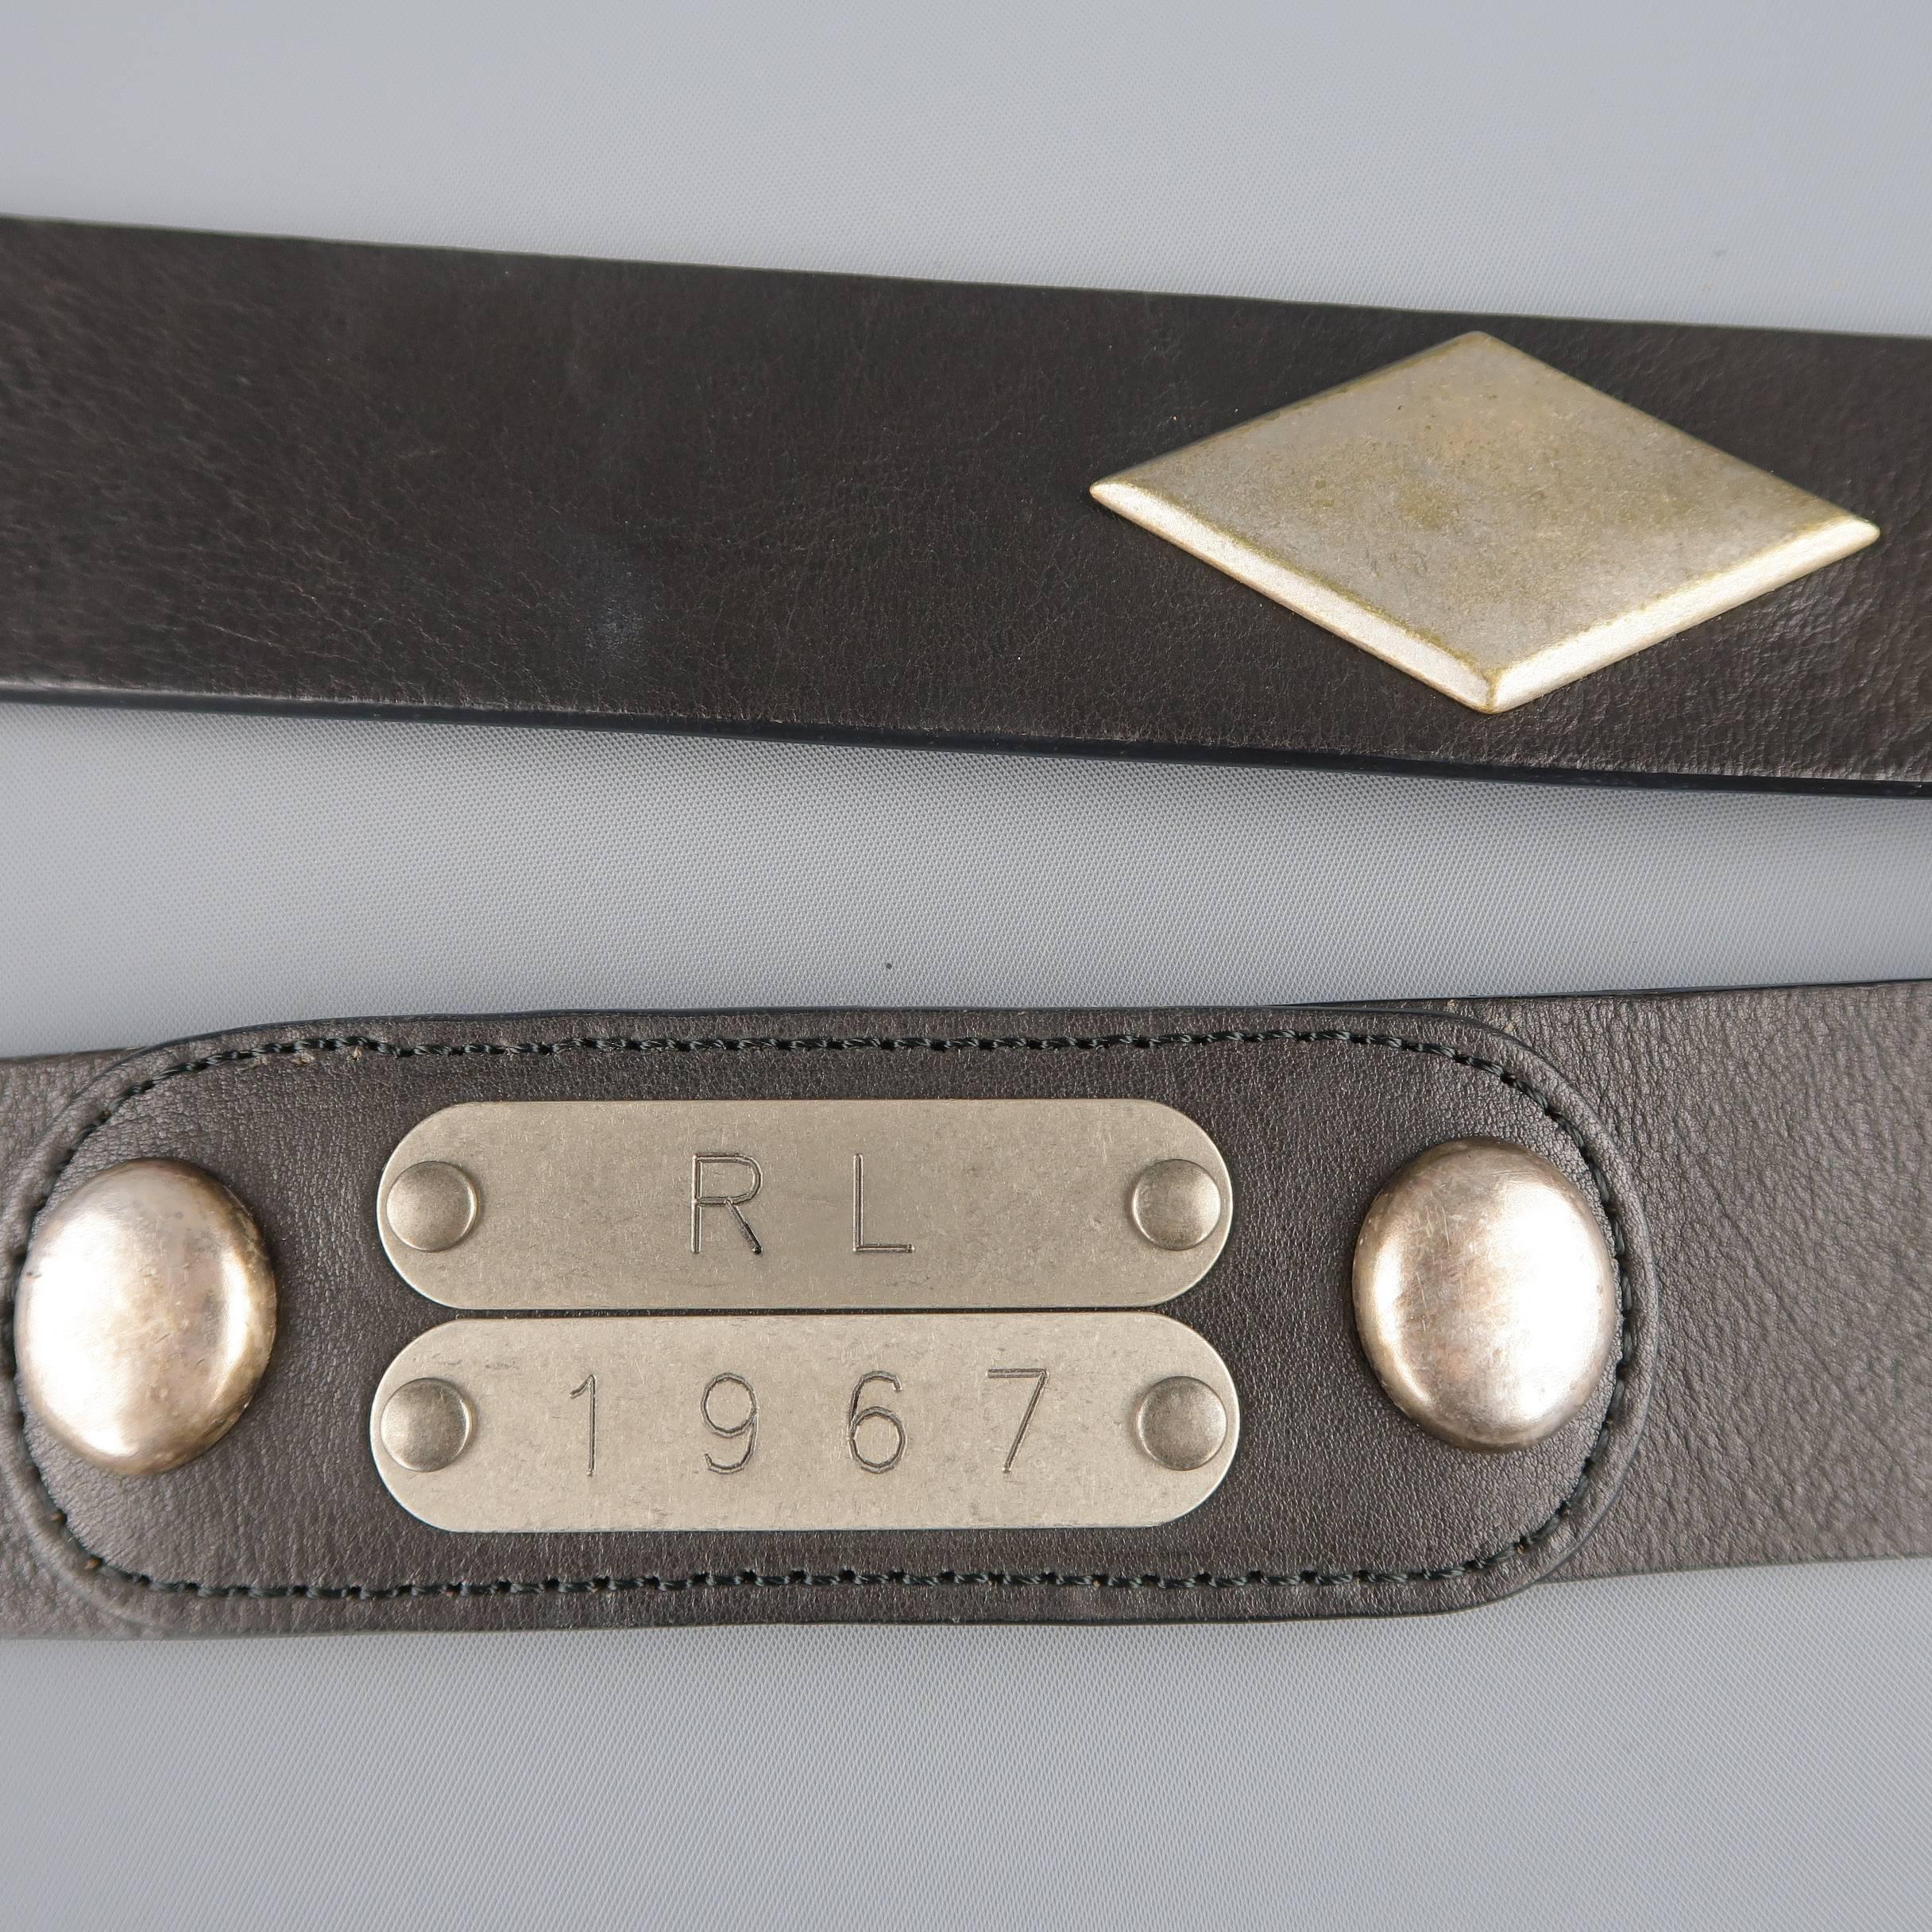 RALPH LAUREN Black Fringe Leather Cross Body RL 1967 Handbag 1